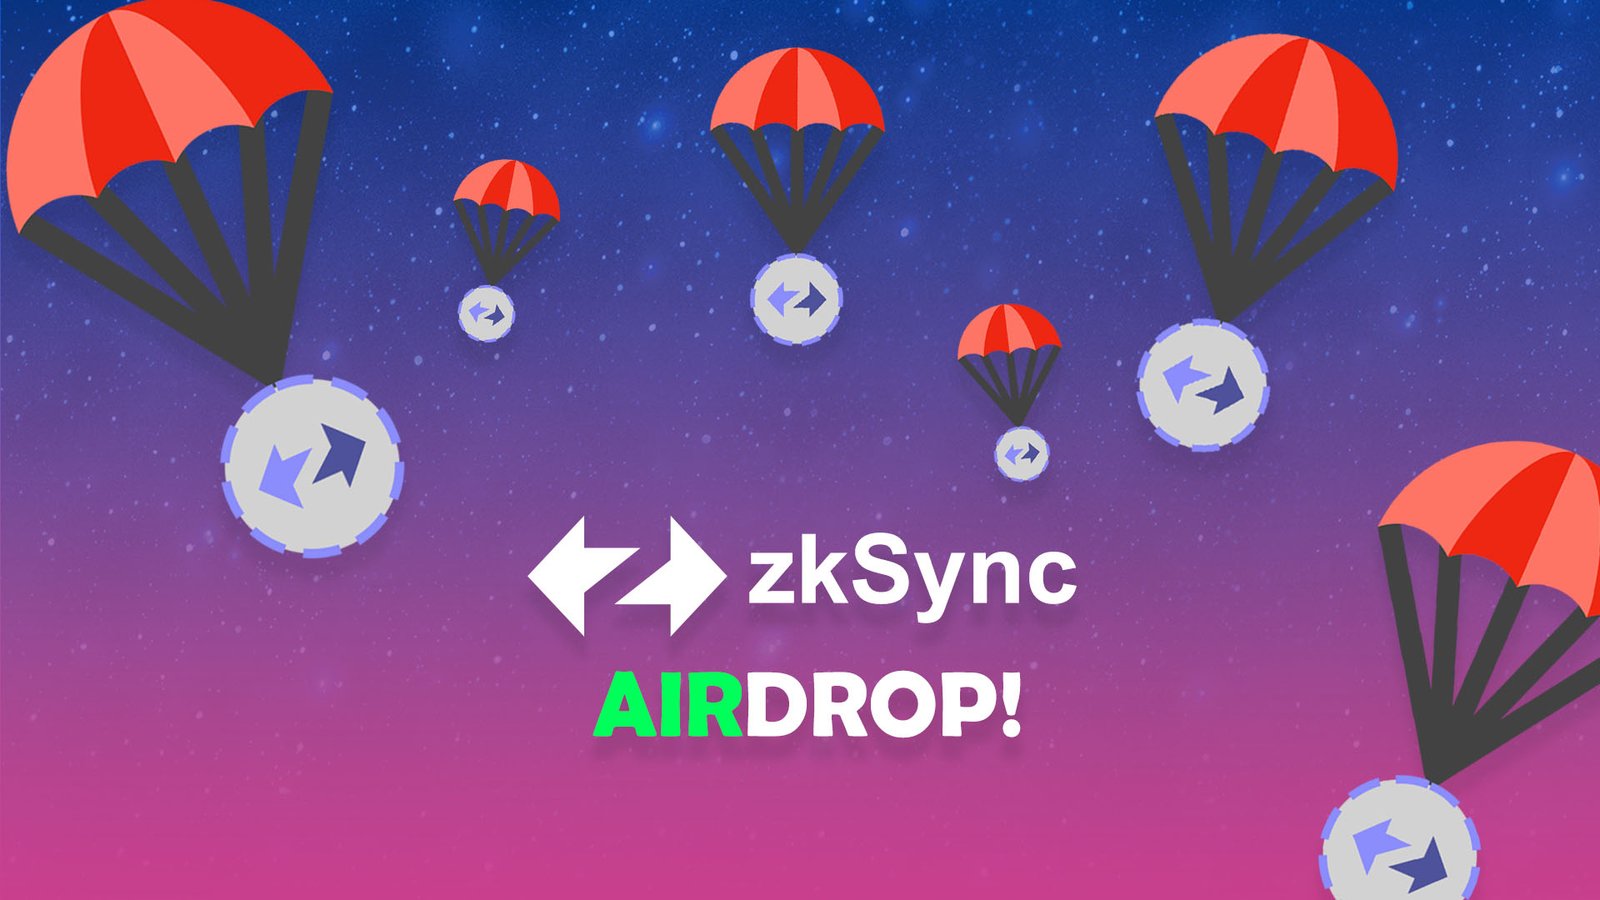 zksync airdrop free $ZKS